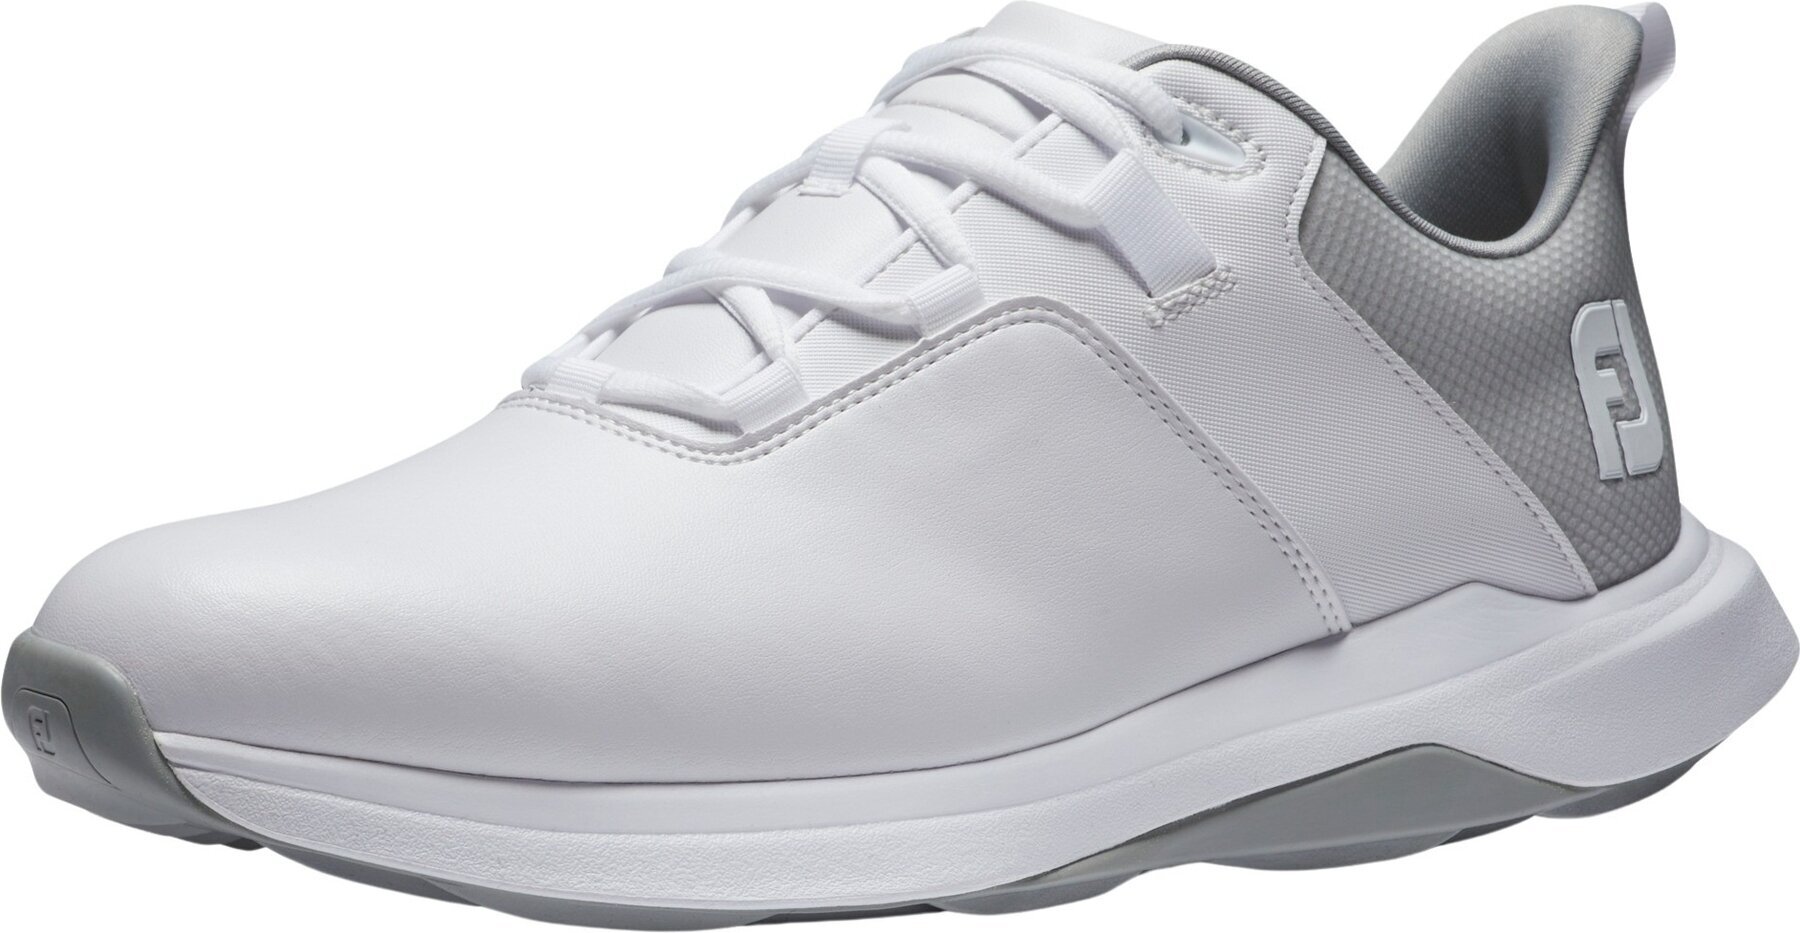 Footjoy ProLite Mens Golf Shoes White/Grey 42,5